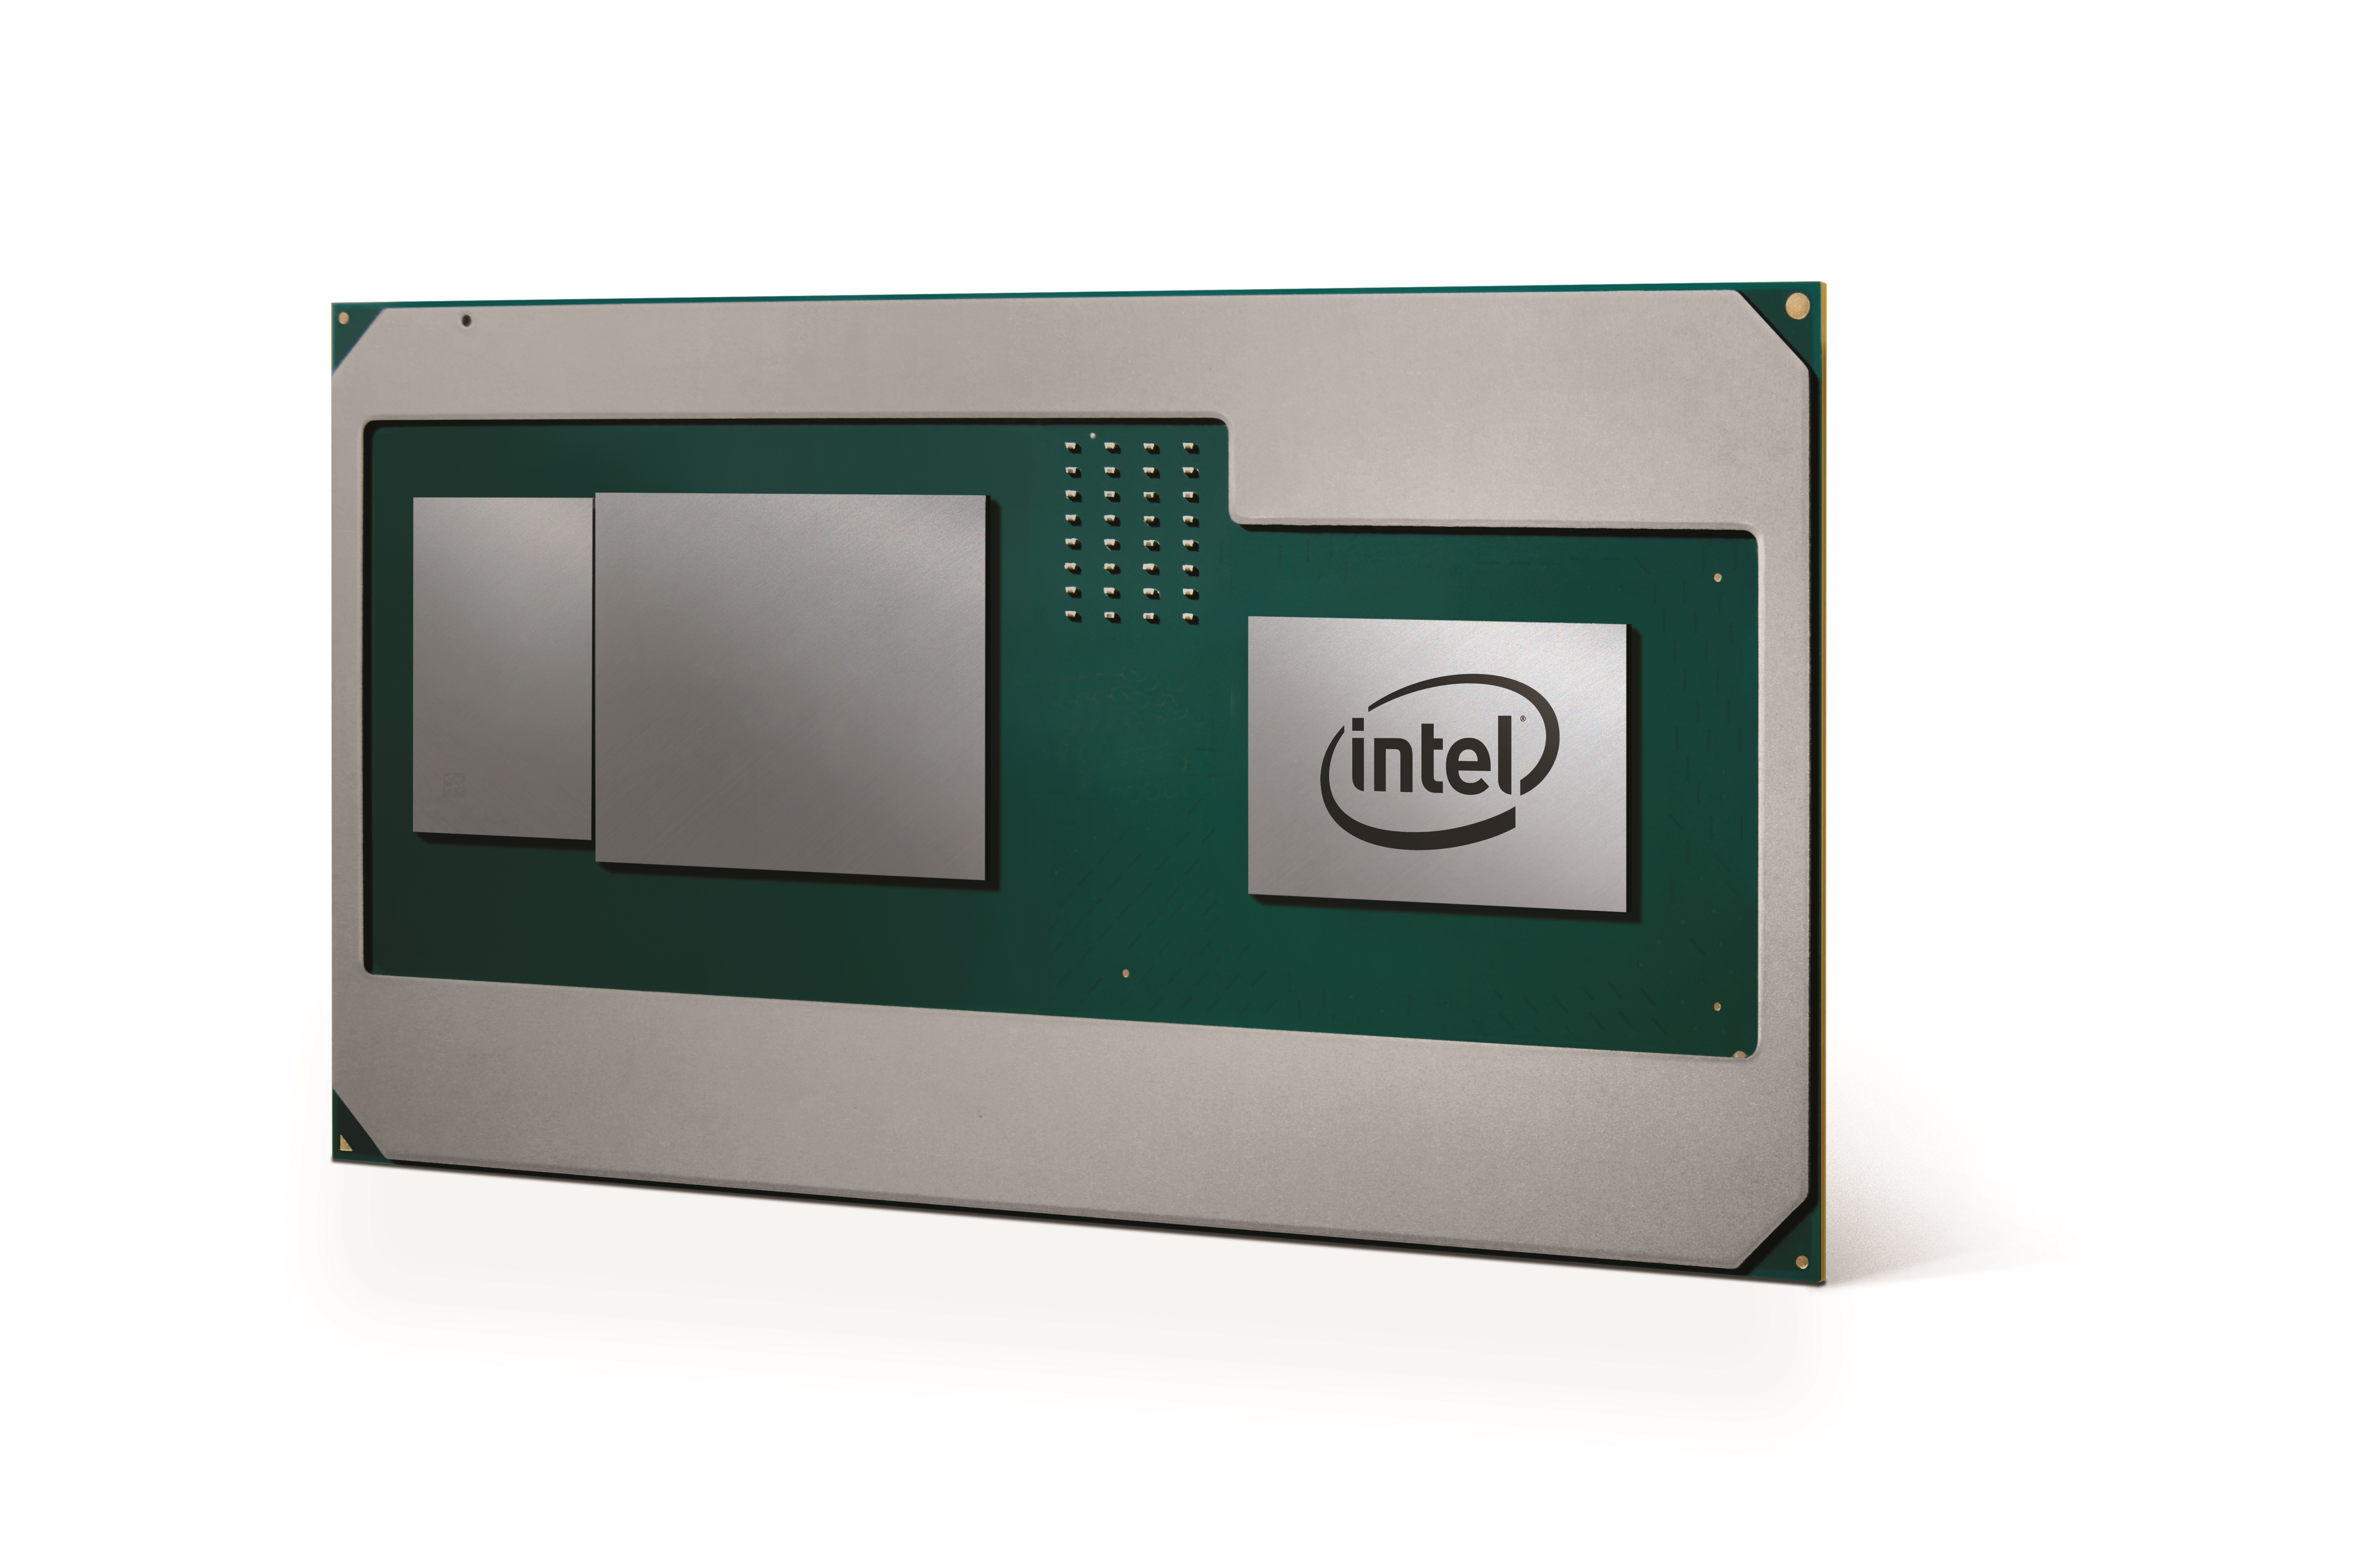 Immagine pubblicata in relazione al seguente contenuto: Intel ufficializza i primi dispositivi con CPU Coffee Lake-H e GPU AMD Vega | Nome immagine: news27334_Intel-AMD-MCM_1.jpg